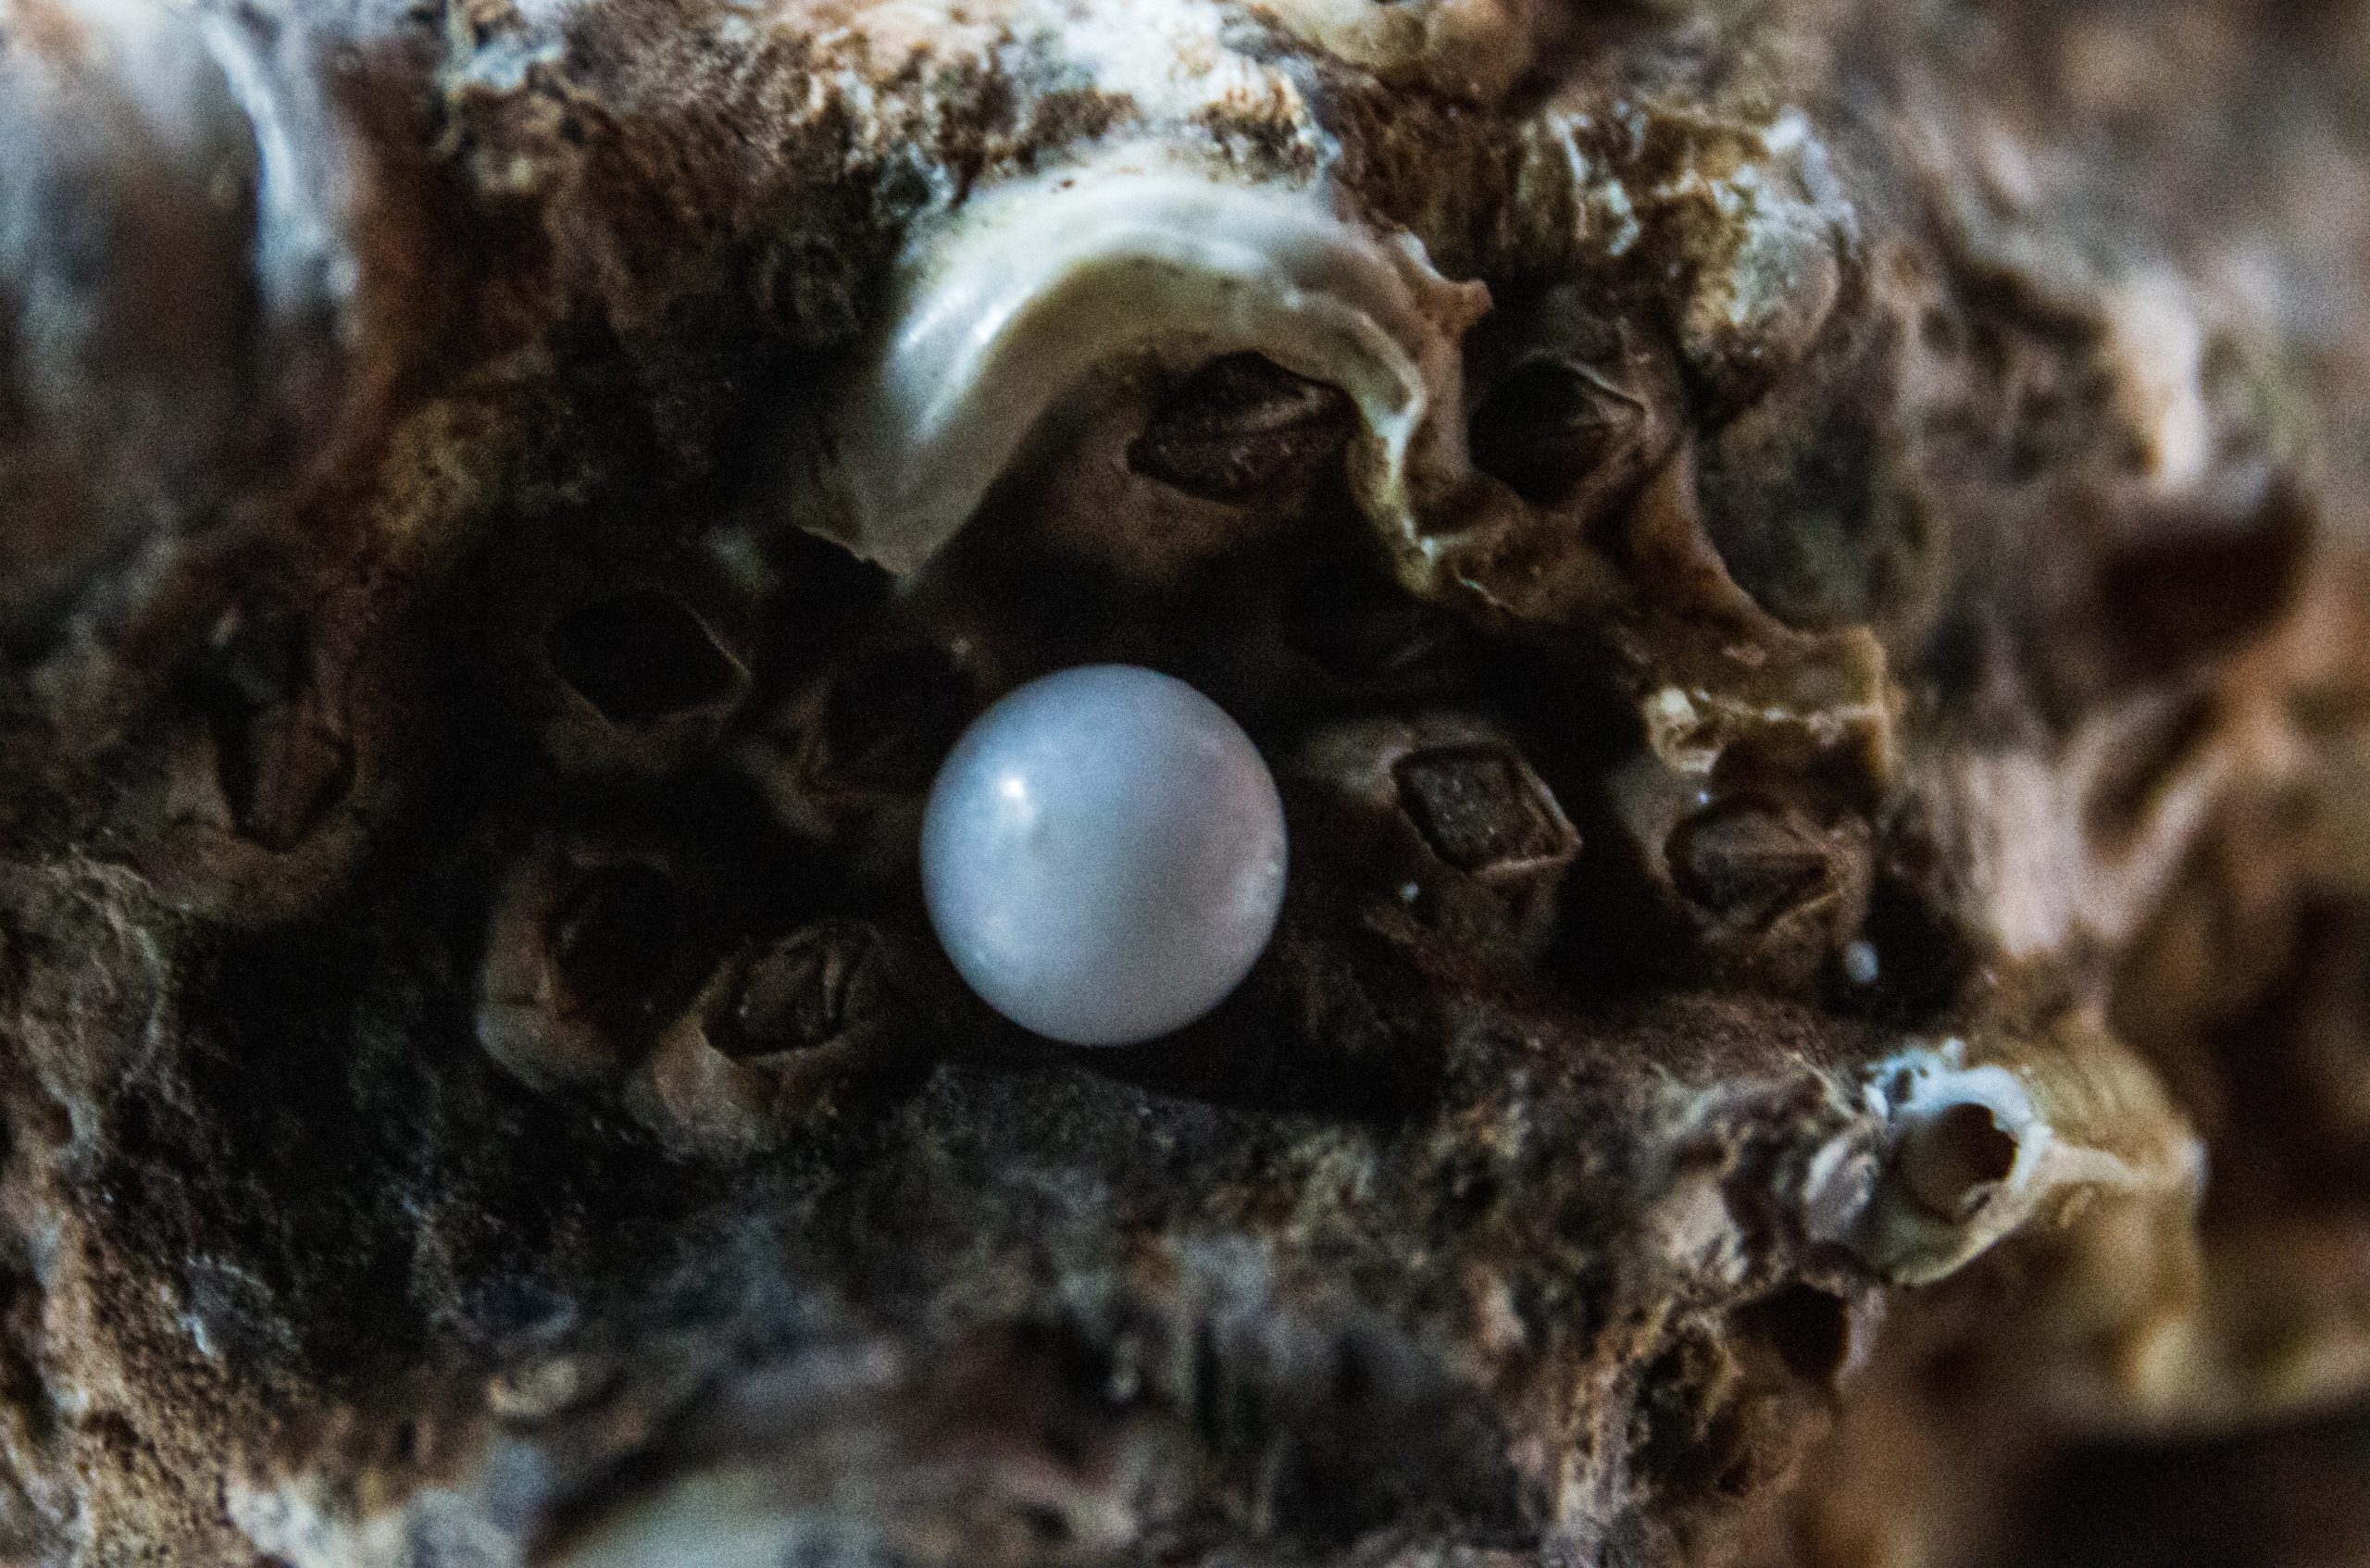 Ostrica perla